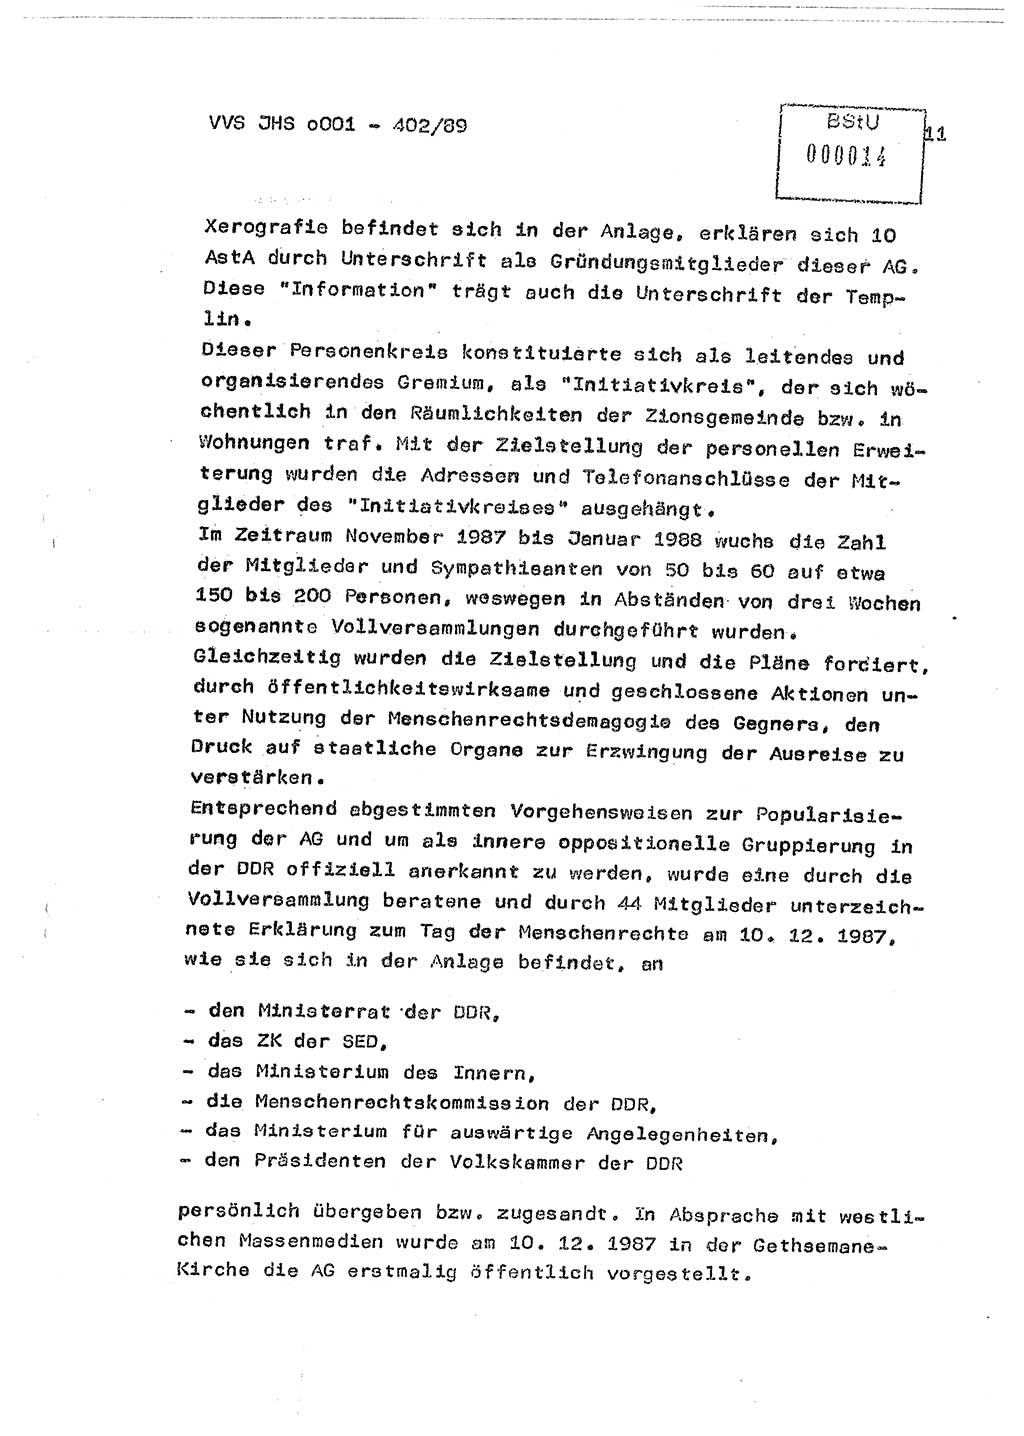 Diplomarbeit Major Günter Müller (HA Ⅸ/9), Ministerium für Staatssicherheit (MfS) [Deutsche Demokratische Republik (DDR)], Juristische Hochschule (JHS), Vertrauliche Verschlußsache (VVS) o001-402/89, Potsdam 1989, Seite 11 (Dipl.-Arb. MfS DDR JHS VVS o001-402/89 1989, S. 11)